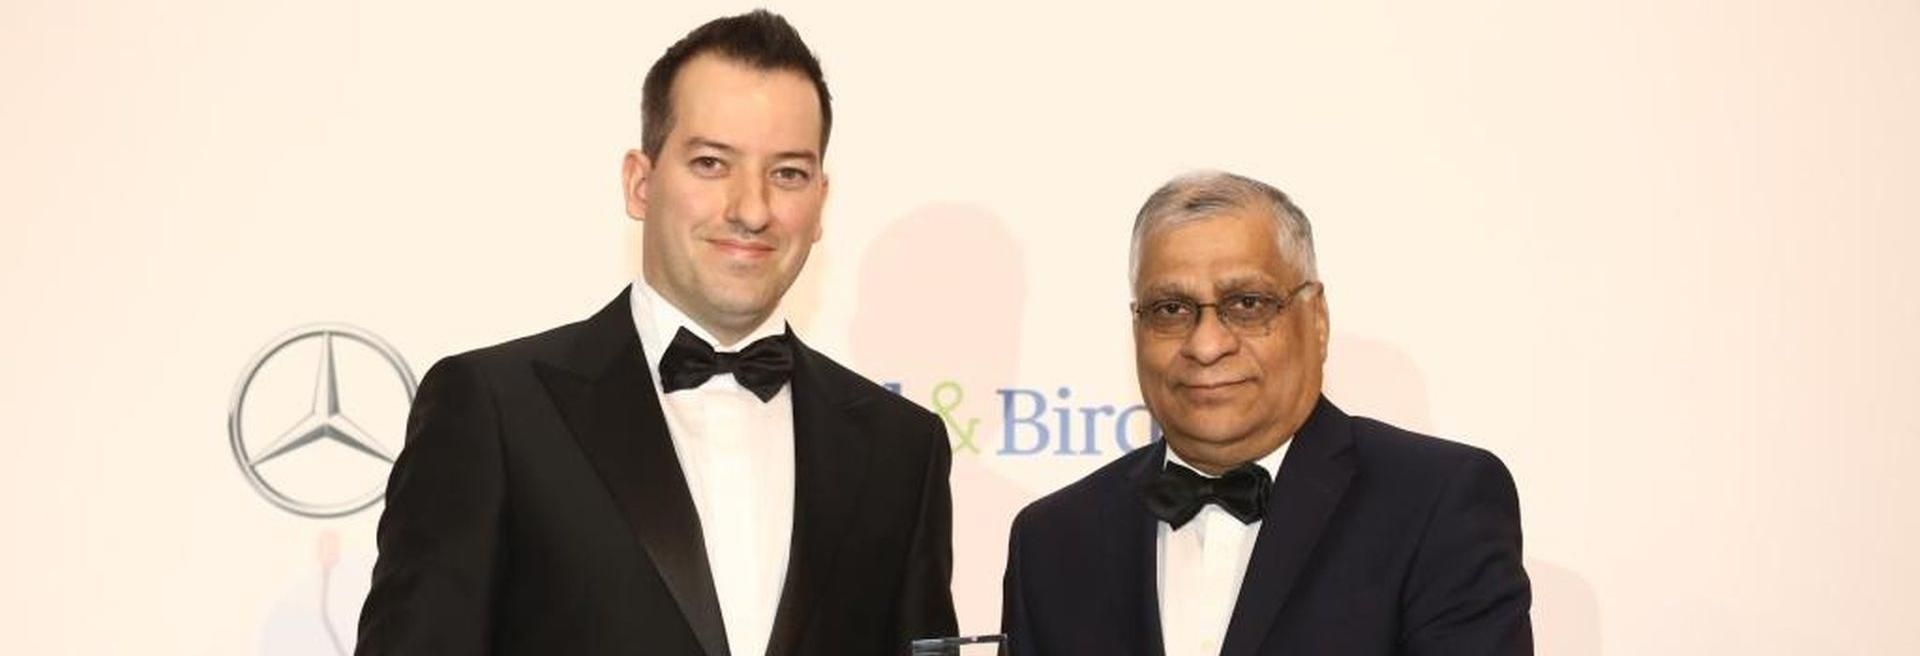 Az ABB és az Apollo Tyres vezetője kapta az év külföldi vállalatvezetőjének járó díjakat